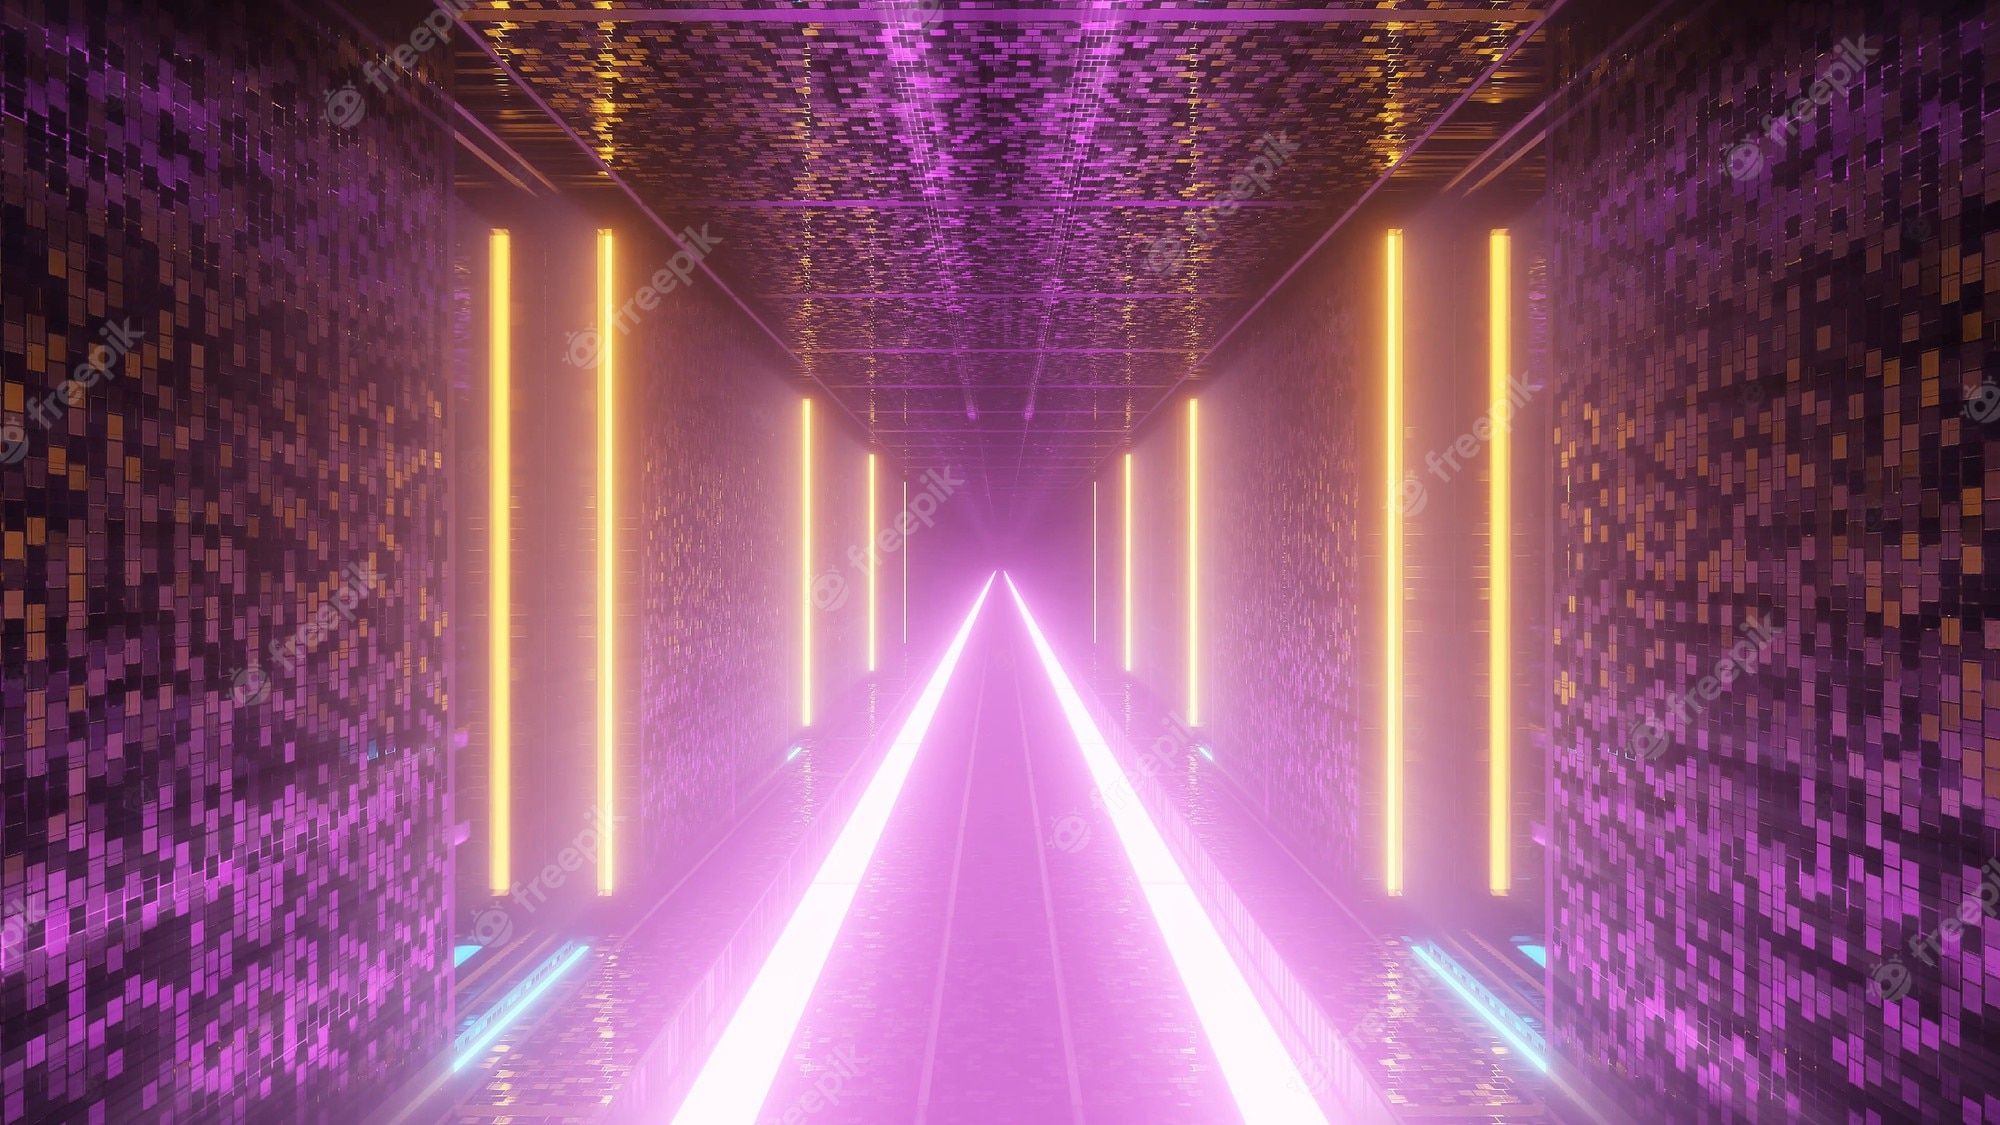  Lichter Hintergrundbild 2000x1125. Cooler futuristischer hintergrund mit beleuchteten bunten blinkenden lichtern